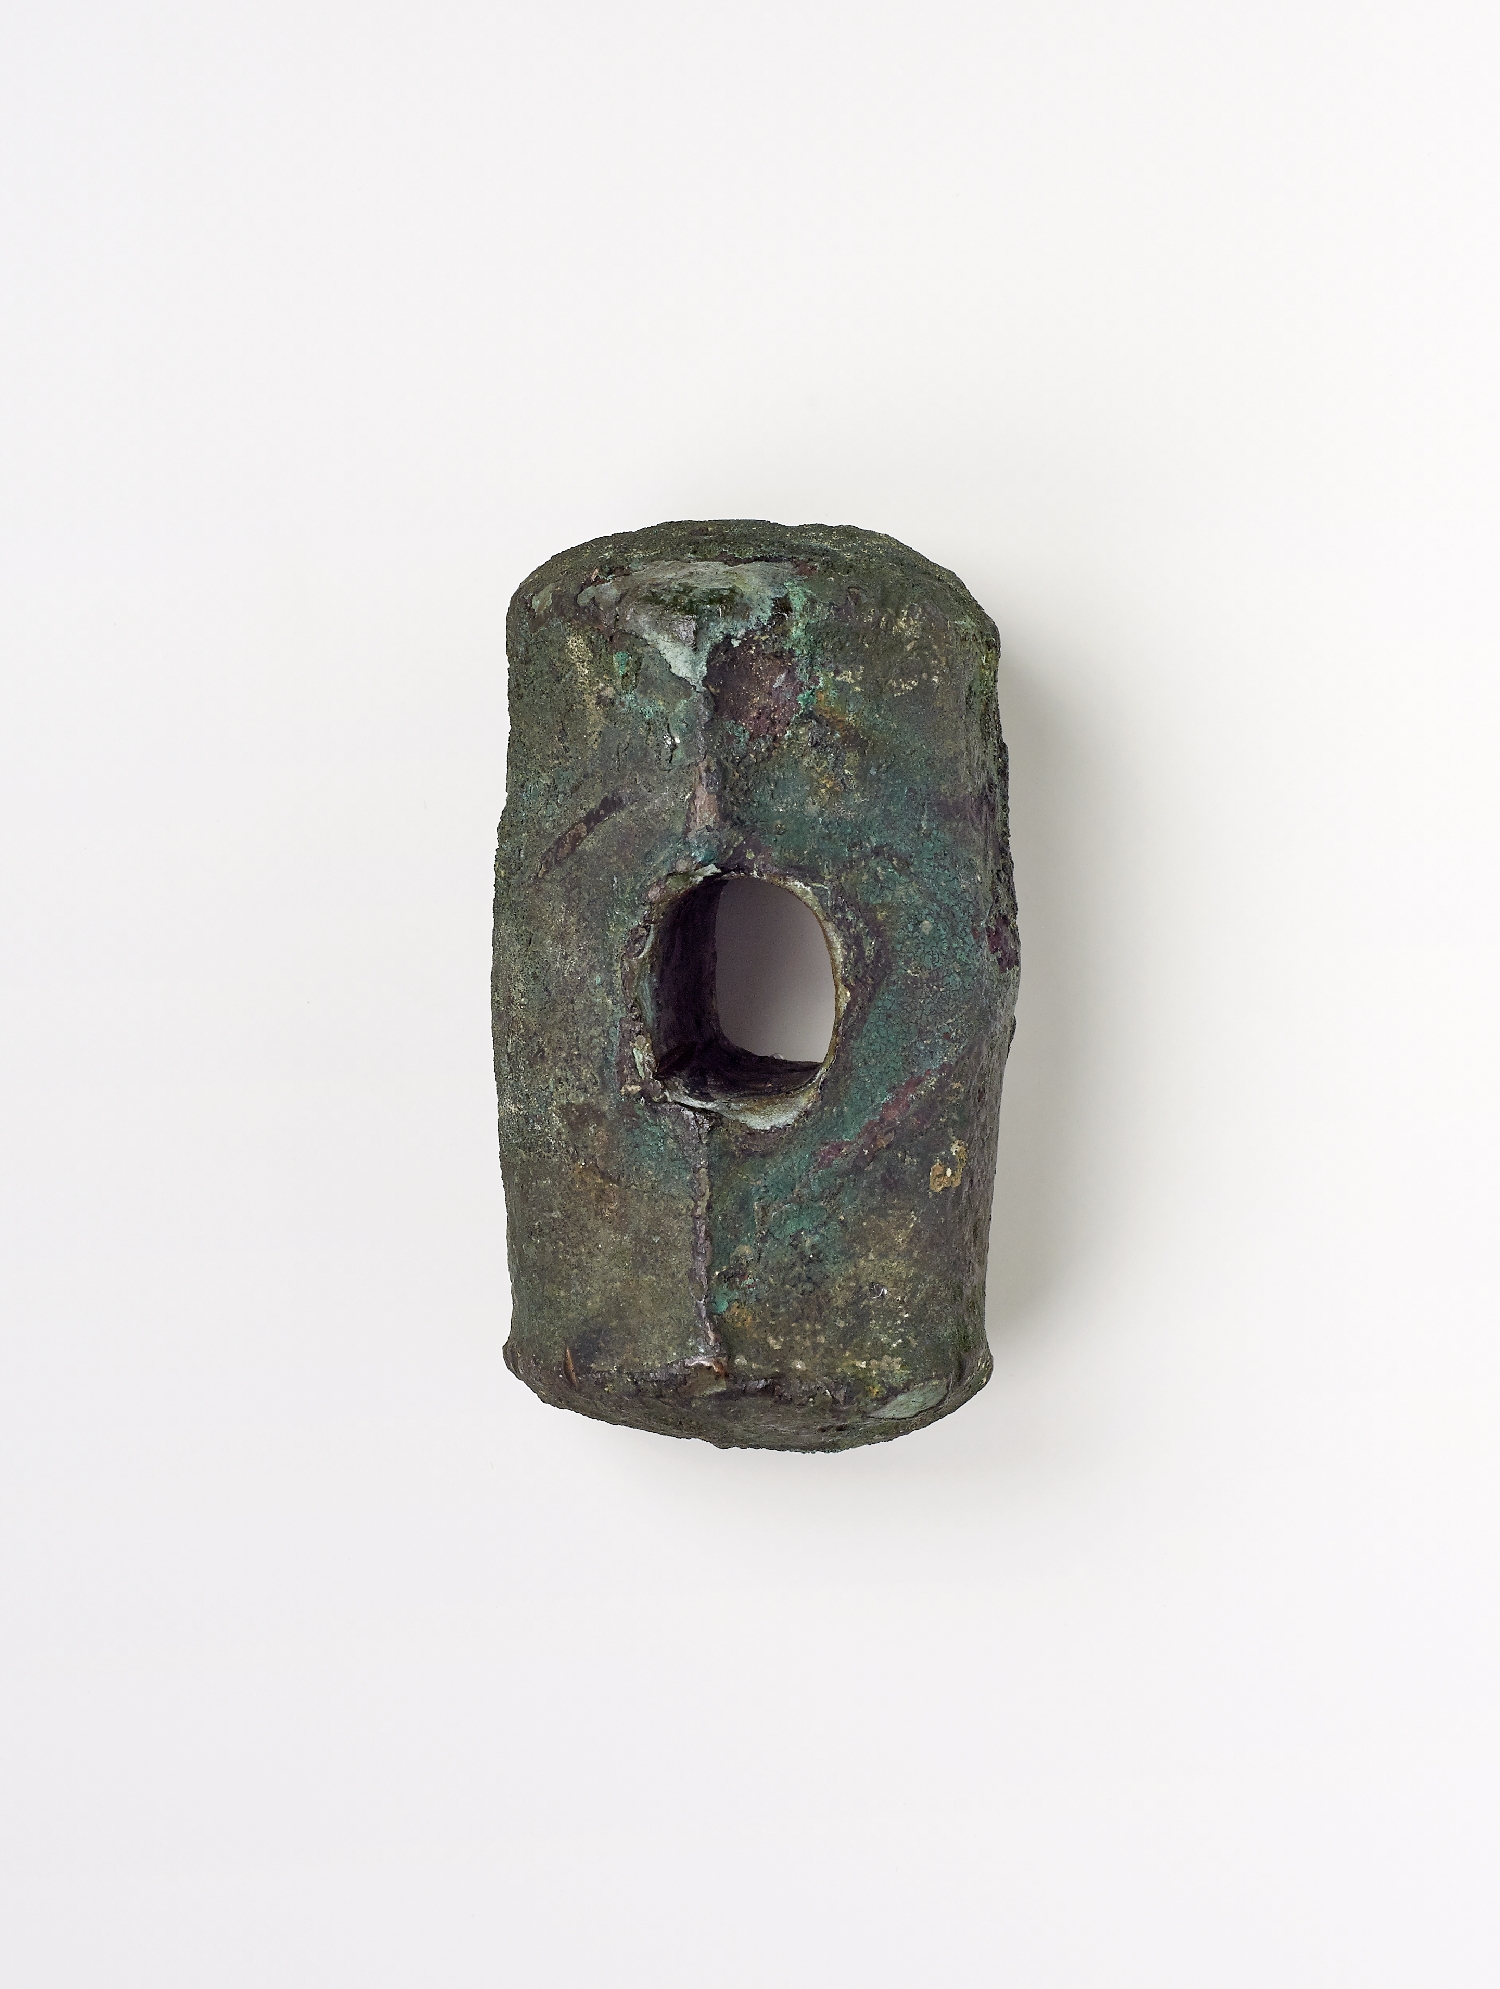 Schlägel/Hammer, FO: Mühlbach am Hochkönig, Mitterberg, Bronzezeit, 2. Jt. v. Chr., Bronze, Inv.-Nr. ARCH 1600